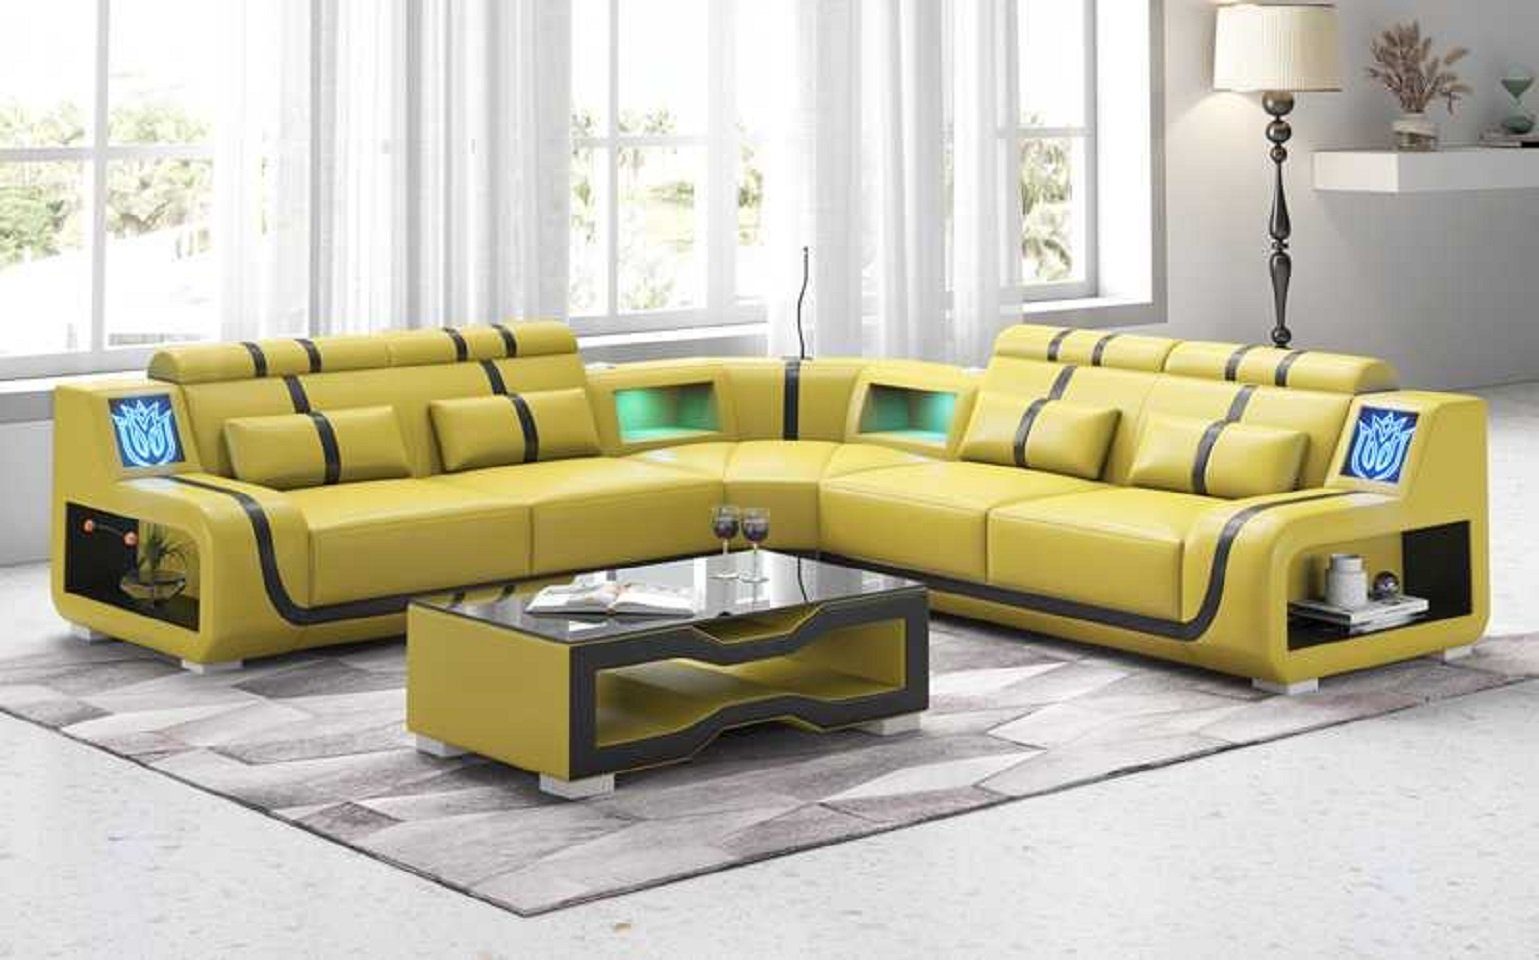 Made Europe Ecksofa Form 3 couchen Teile, L JVmoebel Kunstleder Sofas, Ecksofa Sofa Luxus in Couch Modern Gelb